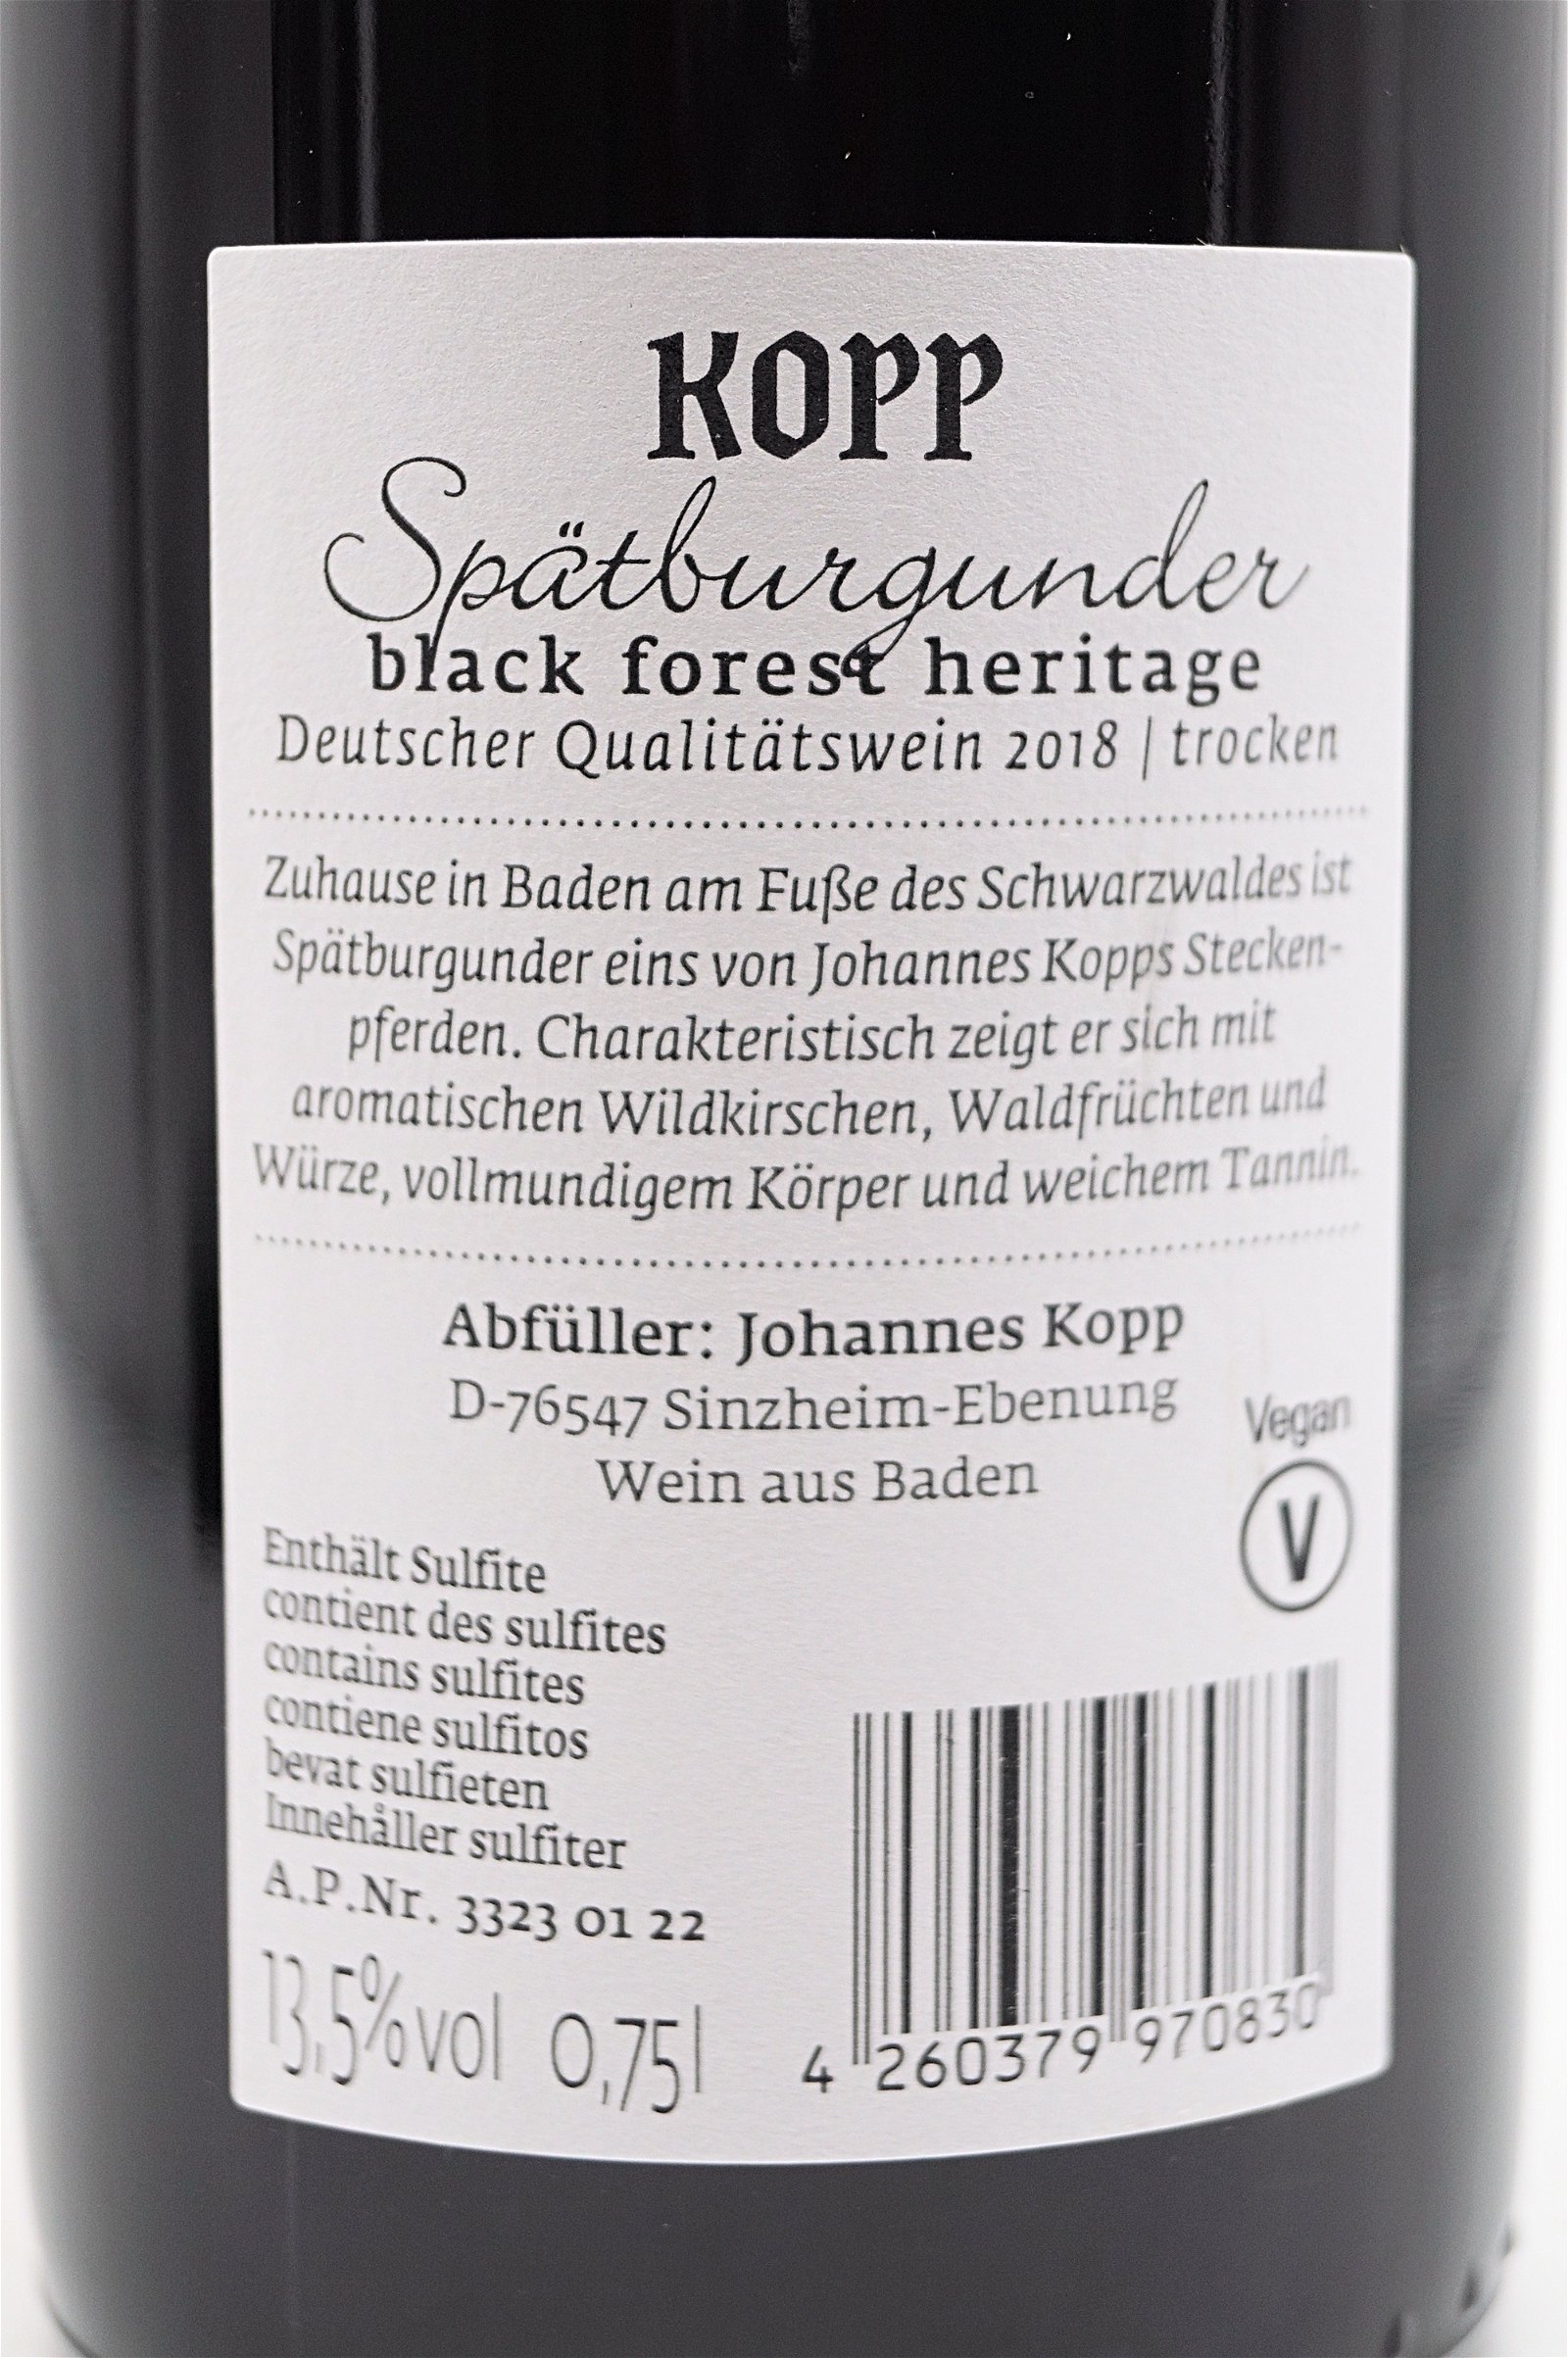 Kopp Spätburgunder black forest heritage 2018 trocken 6 Fl. Sparset